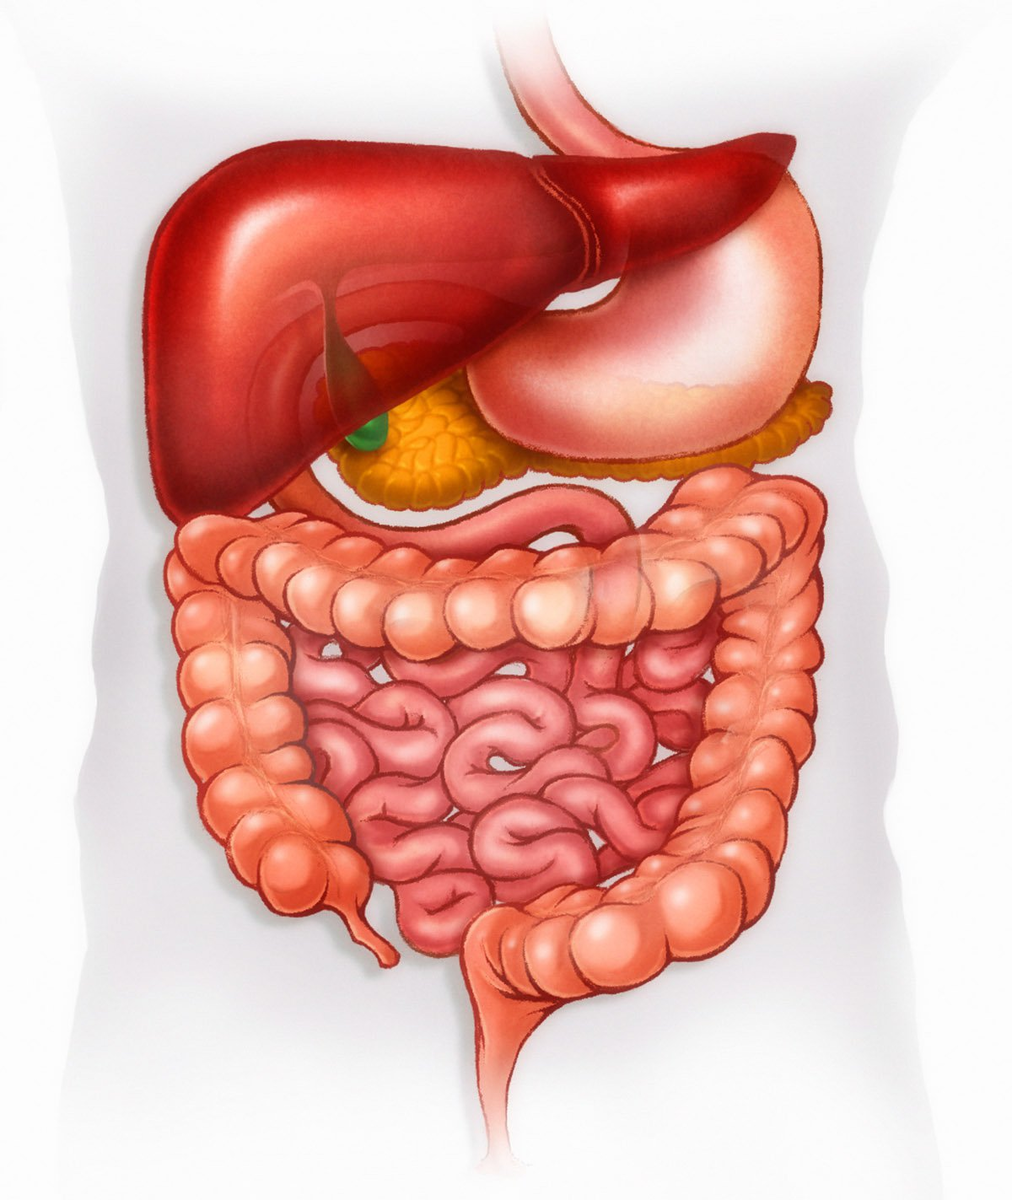 Болезнь печени и желудка. Желудочно кишечный тракт. Пищеварительная система кишечник анатомия. ЖКТ желудочно-кишечный тракт. Пищеварительный пищеварительный тракт пищеварительный тракт.